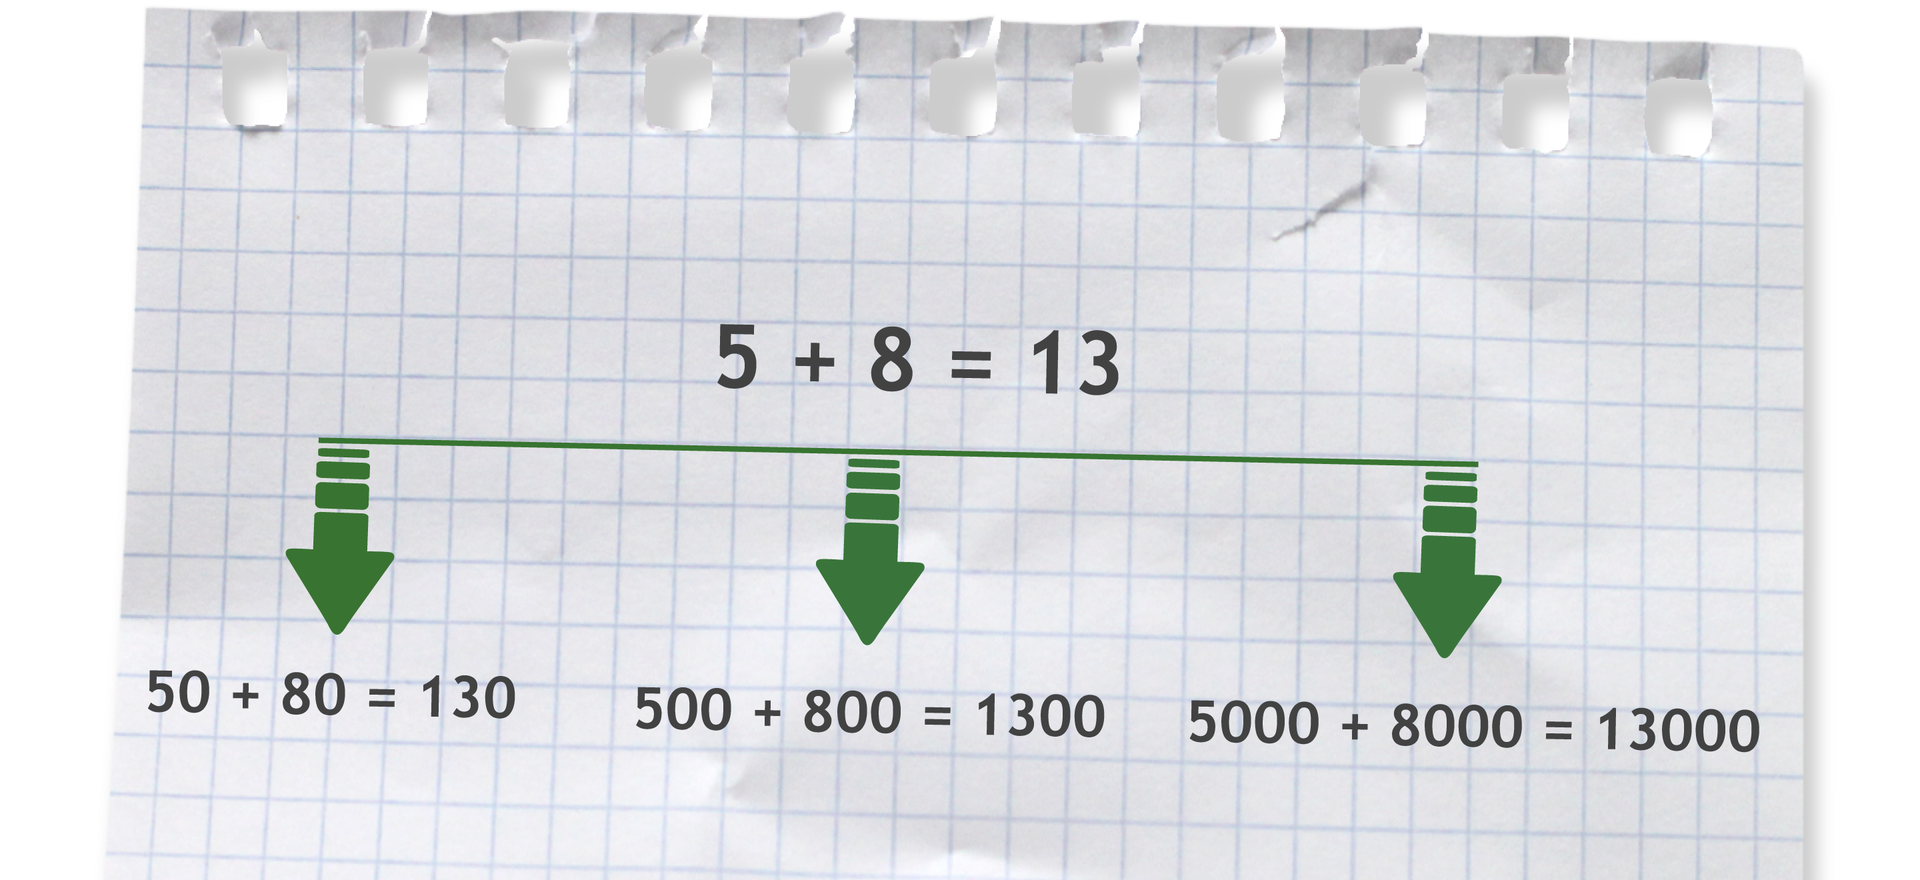 Grafika pokazująca, że na podstawie działania 5+8=13 w łatwy sposób możemy podać wyniki innych działań, na przykład: 50+80=130, 500+800=1300 lub 5000+8000=trzynaście tysięcy.